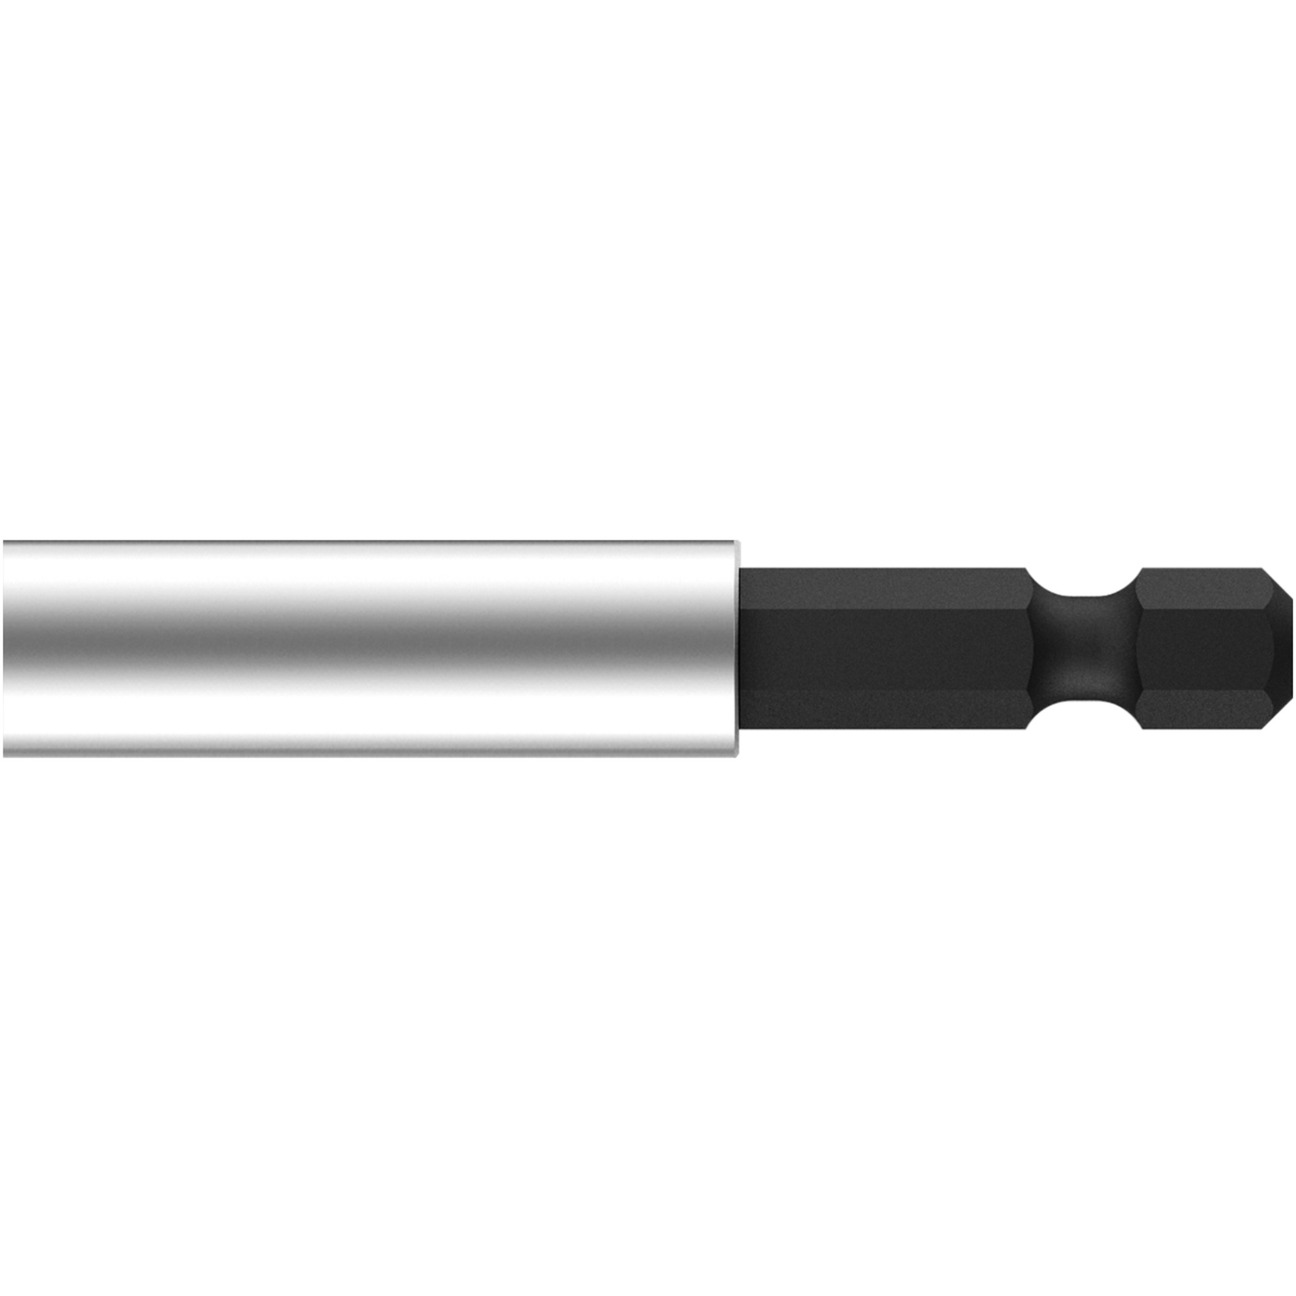 Image of Alternate - Bithalter magnetisch, 58mm 1/4", Adapter online einkaufen bei Alternate